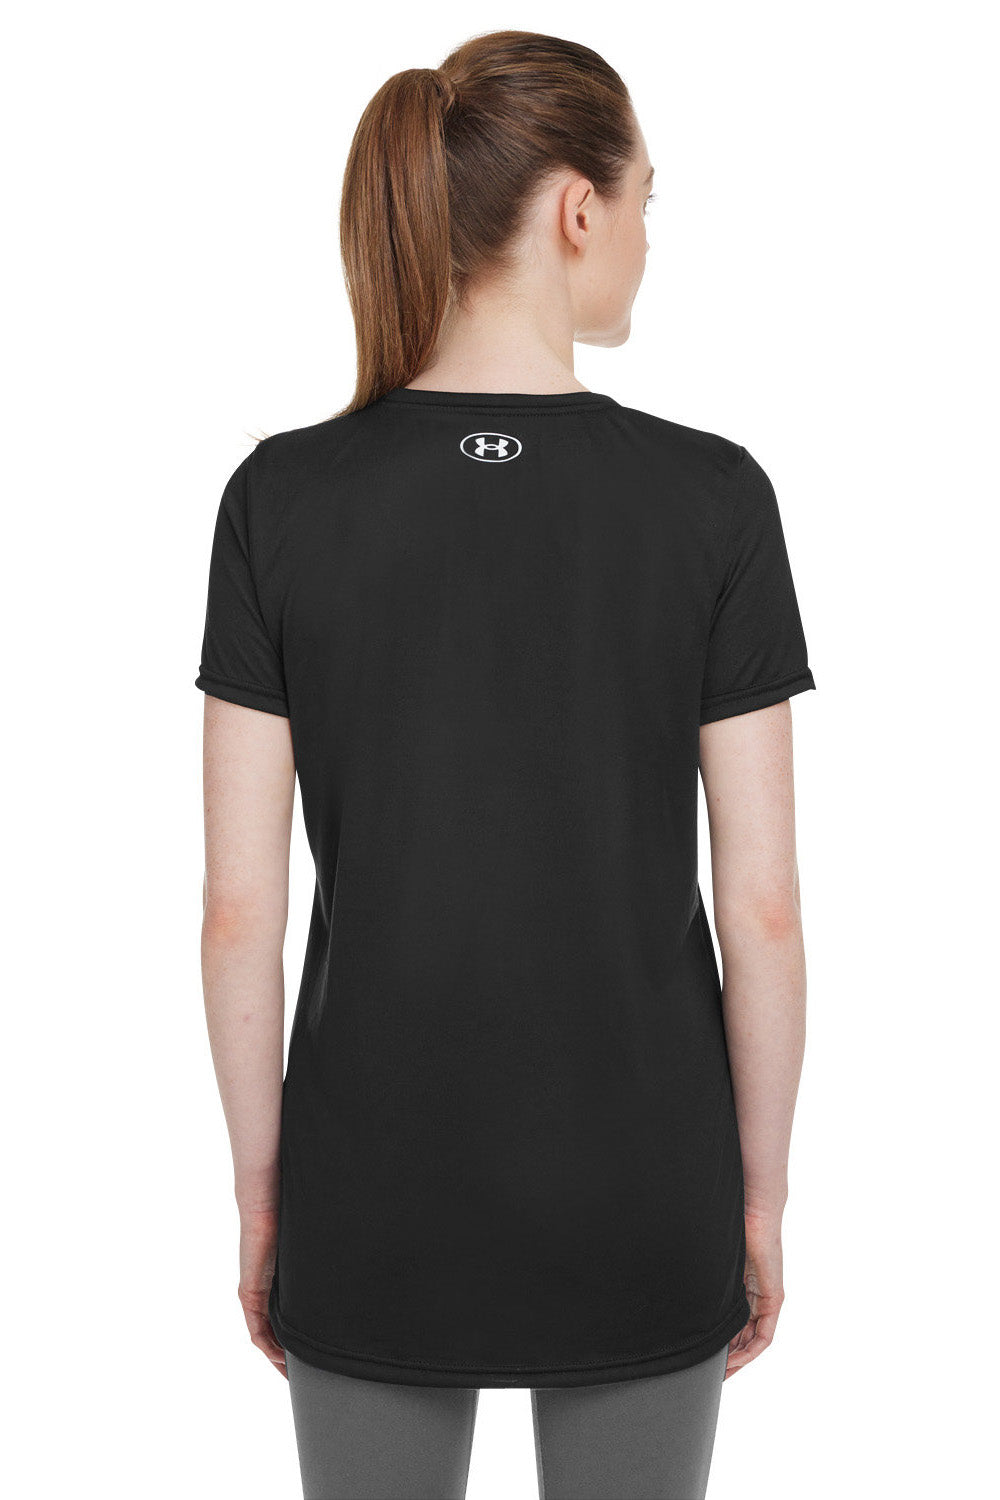 Under Armour 1376847 Womens Team Tech Moisture Wicking Short Sleeve Crewneck T-Shirt Black Model Back